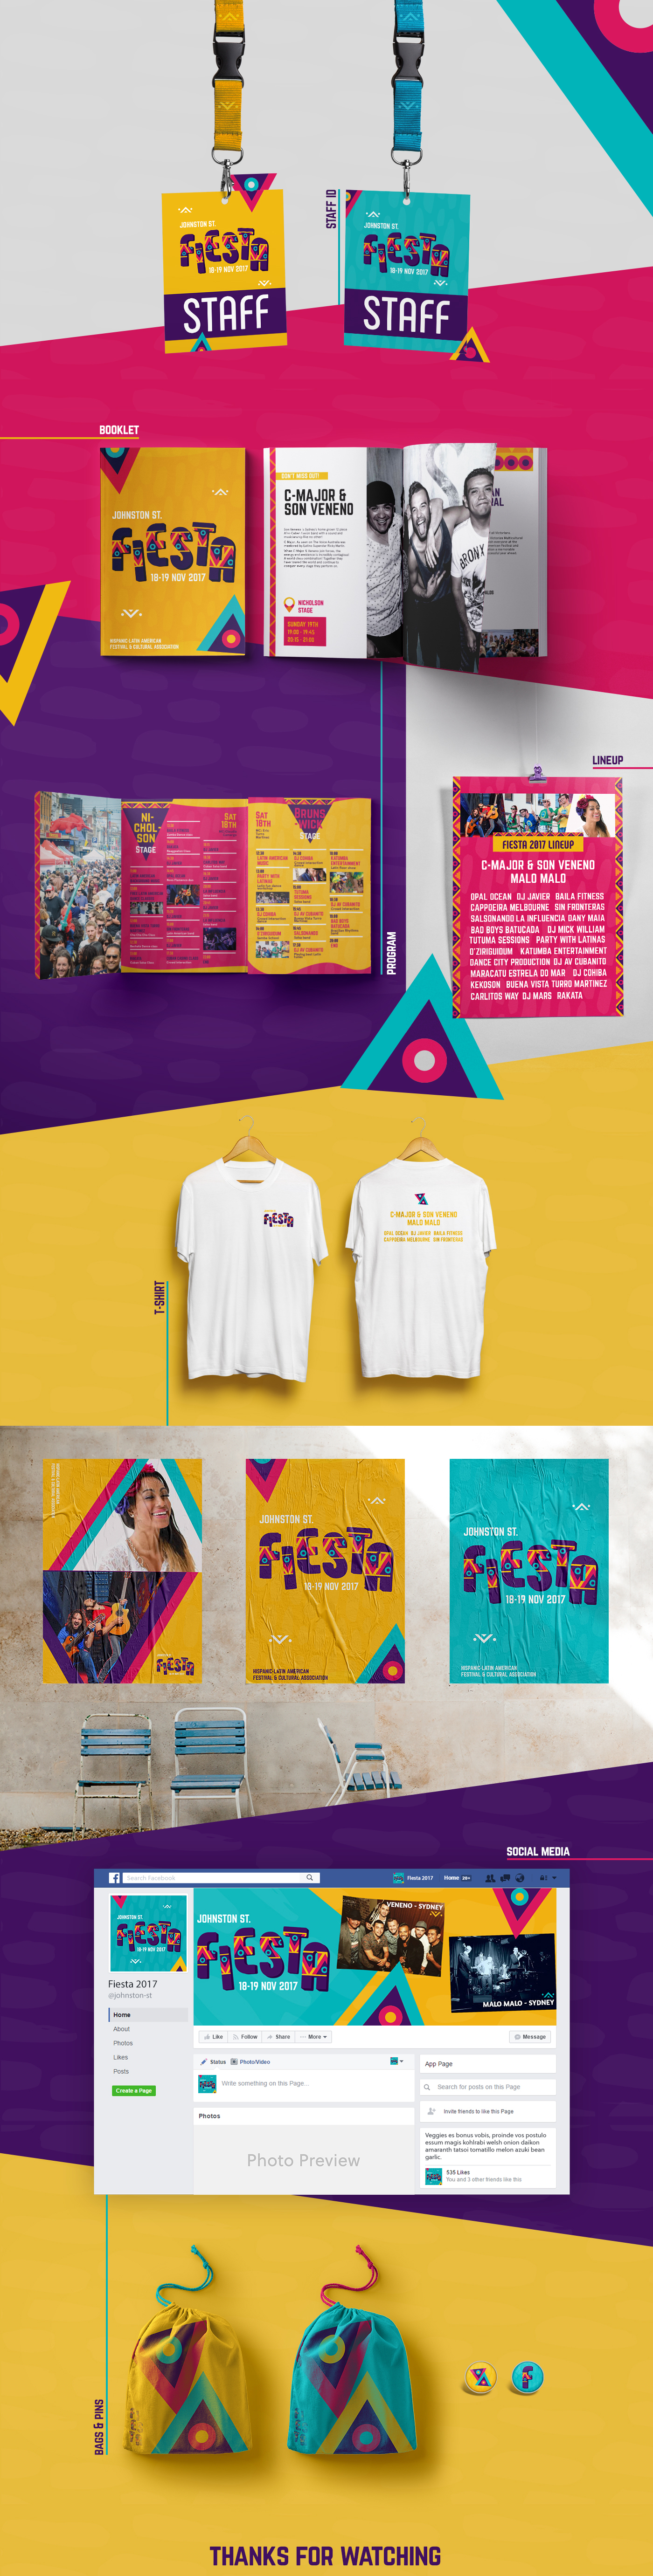 Event branding  identity festival Colourful  Latin culture graphic design 